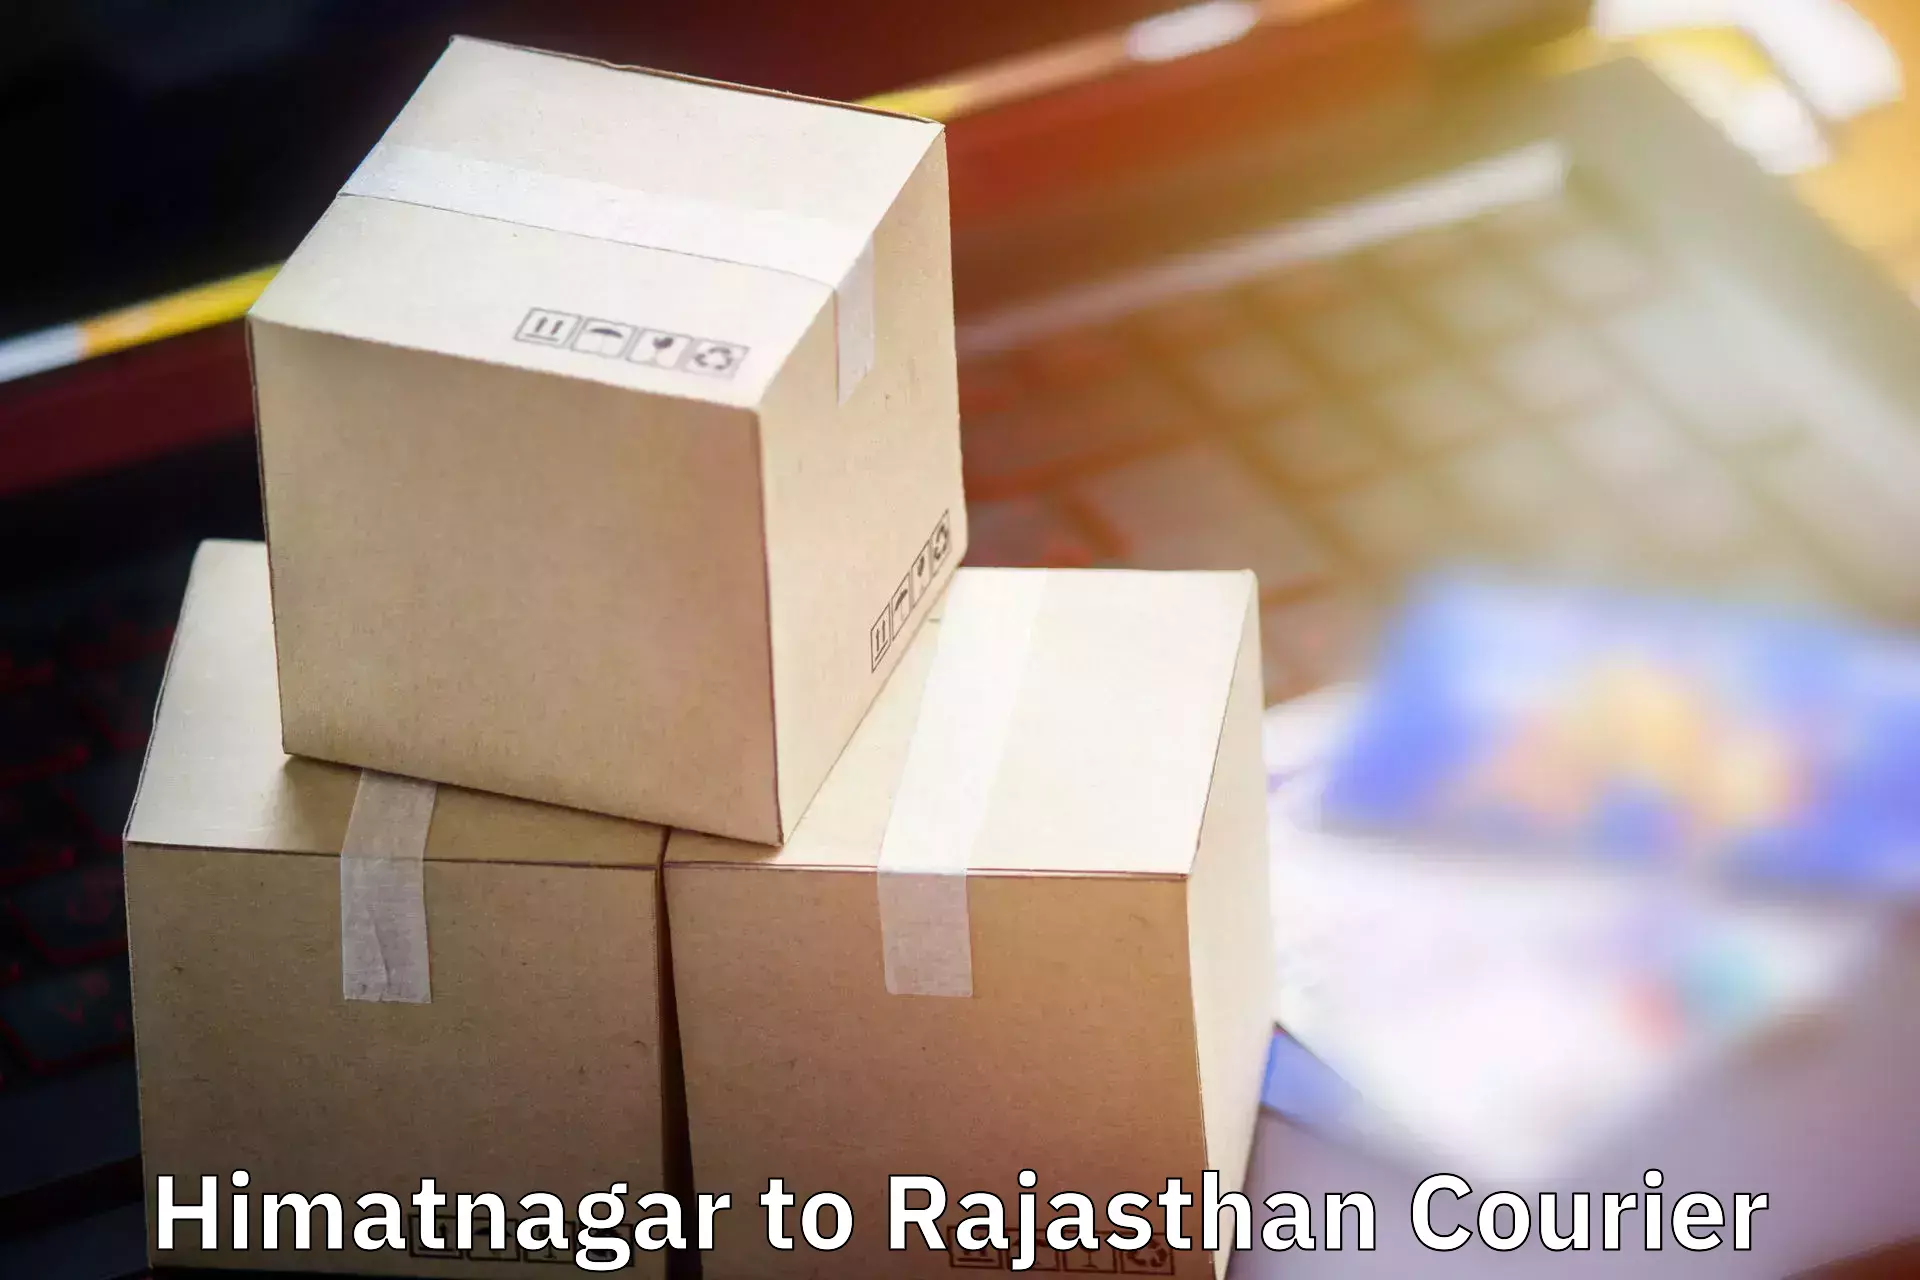 Baggage shipping experience Himatnagar to Lakheri